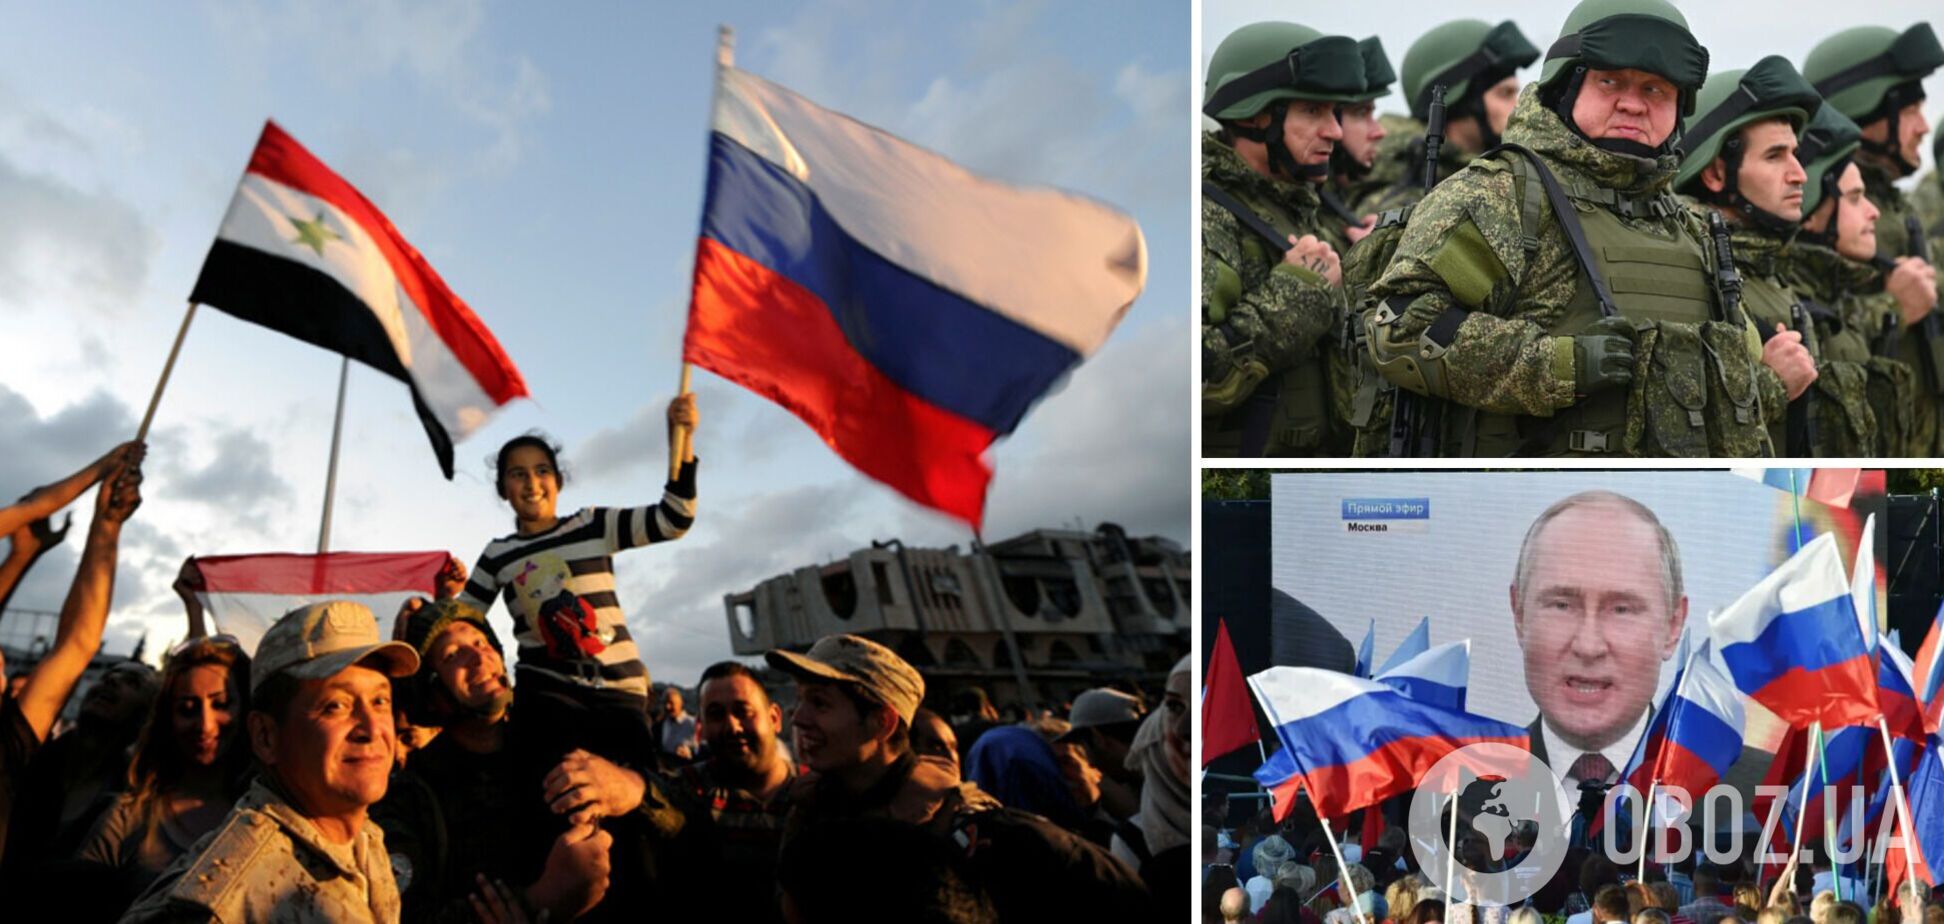 Кремль отправляет помощь Сирии, власти перевели на семьи обеспечение 'мобиков' в Украине